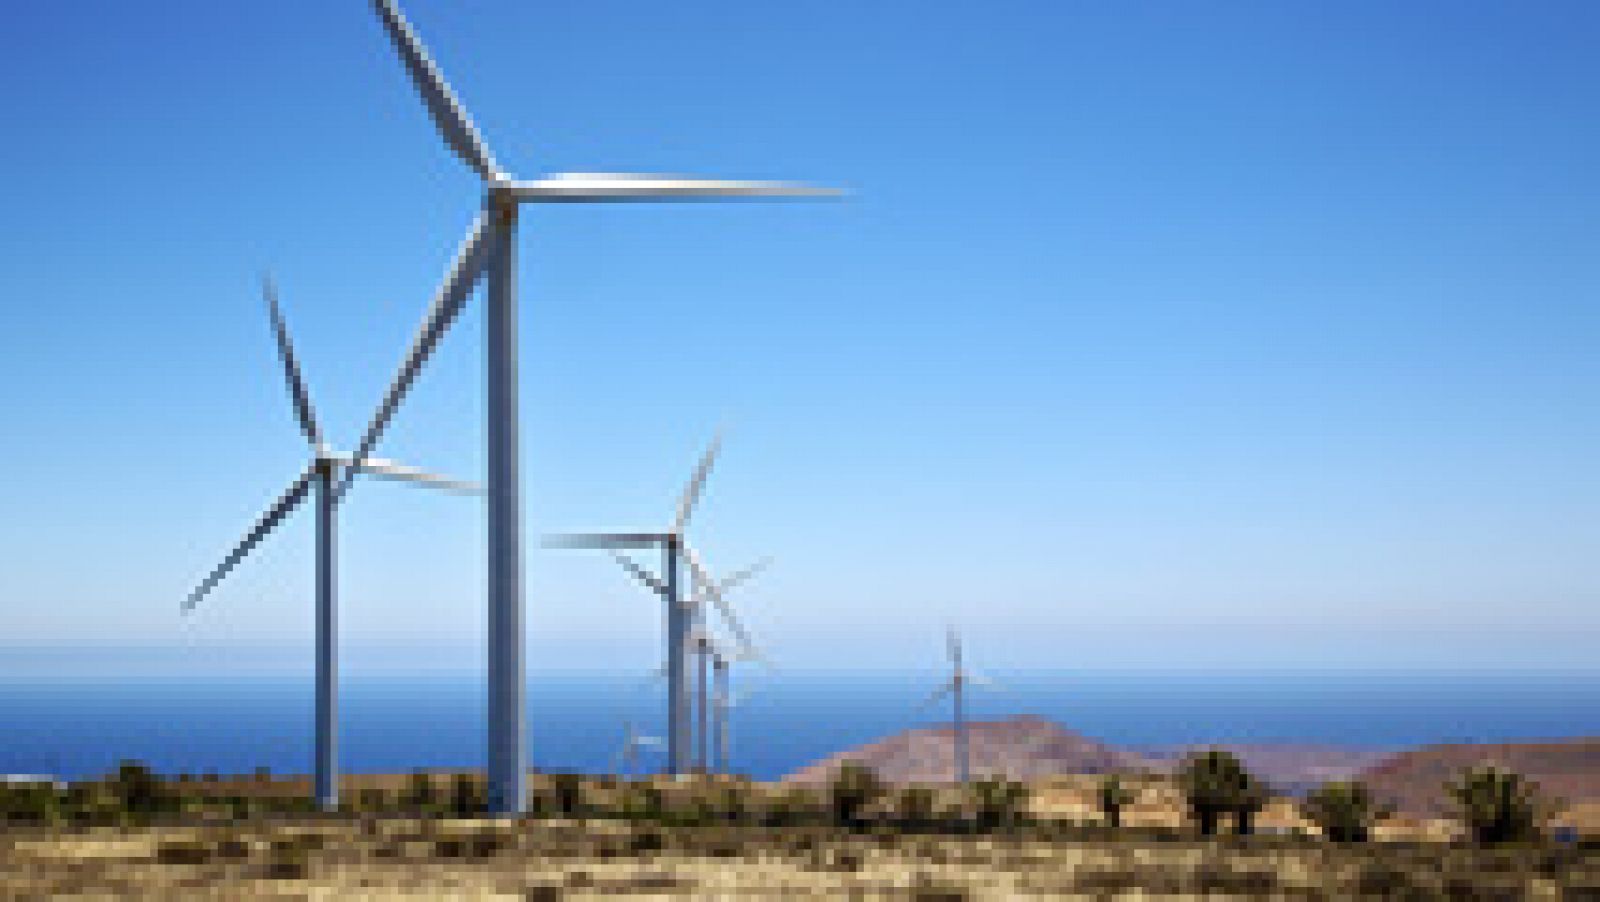 La isla de El Hierro abastece su demanda eléctrica durante 121 minutos únicamente de fuentes renovables